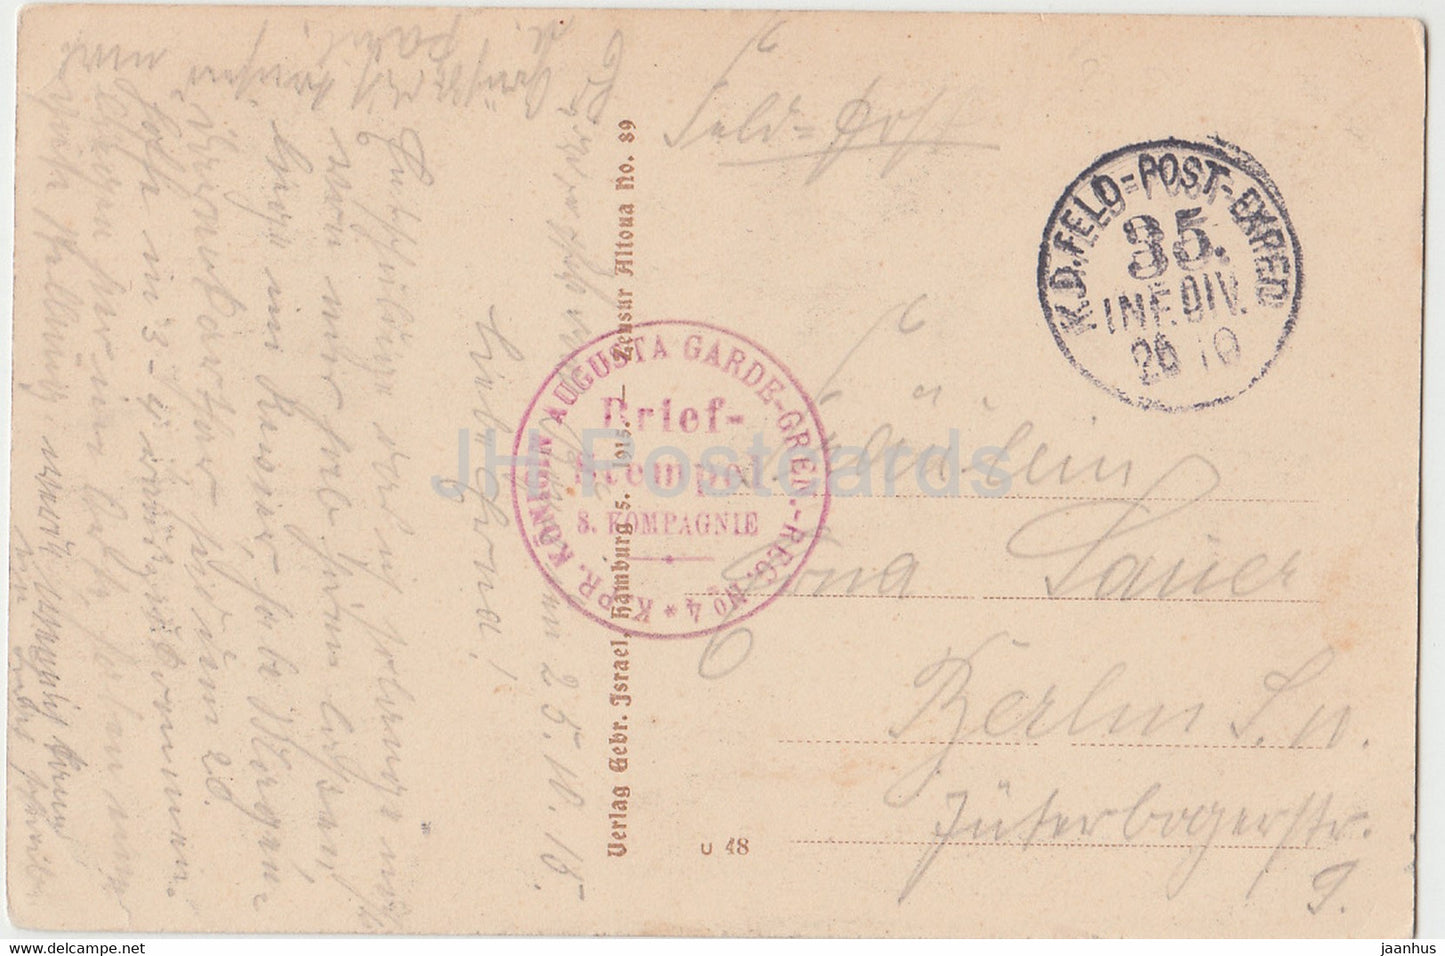 Kirche St Pierre Roye - Konigin Augusta Garde Gren Reg Nr. 4 - Feldpost - alte Postkarte - 1915 - Frankreich - gebraucht